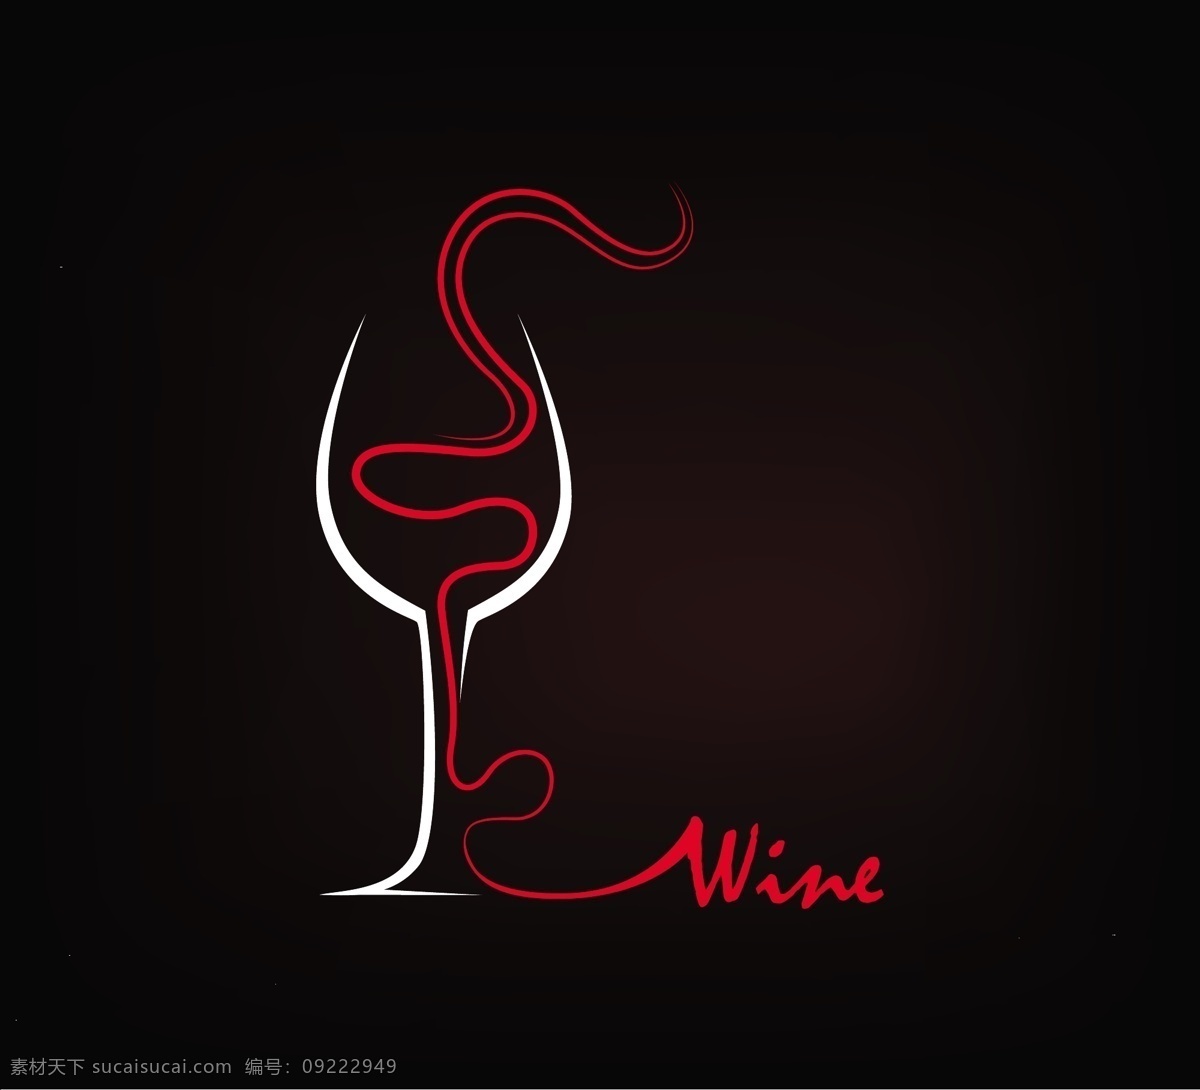 创意 红酒 logo 矢量 模板下载 葡萄酒标志 葡萄酒图标 红酒图标 酒瓶 生活百科 矢量素材 黑色